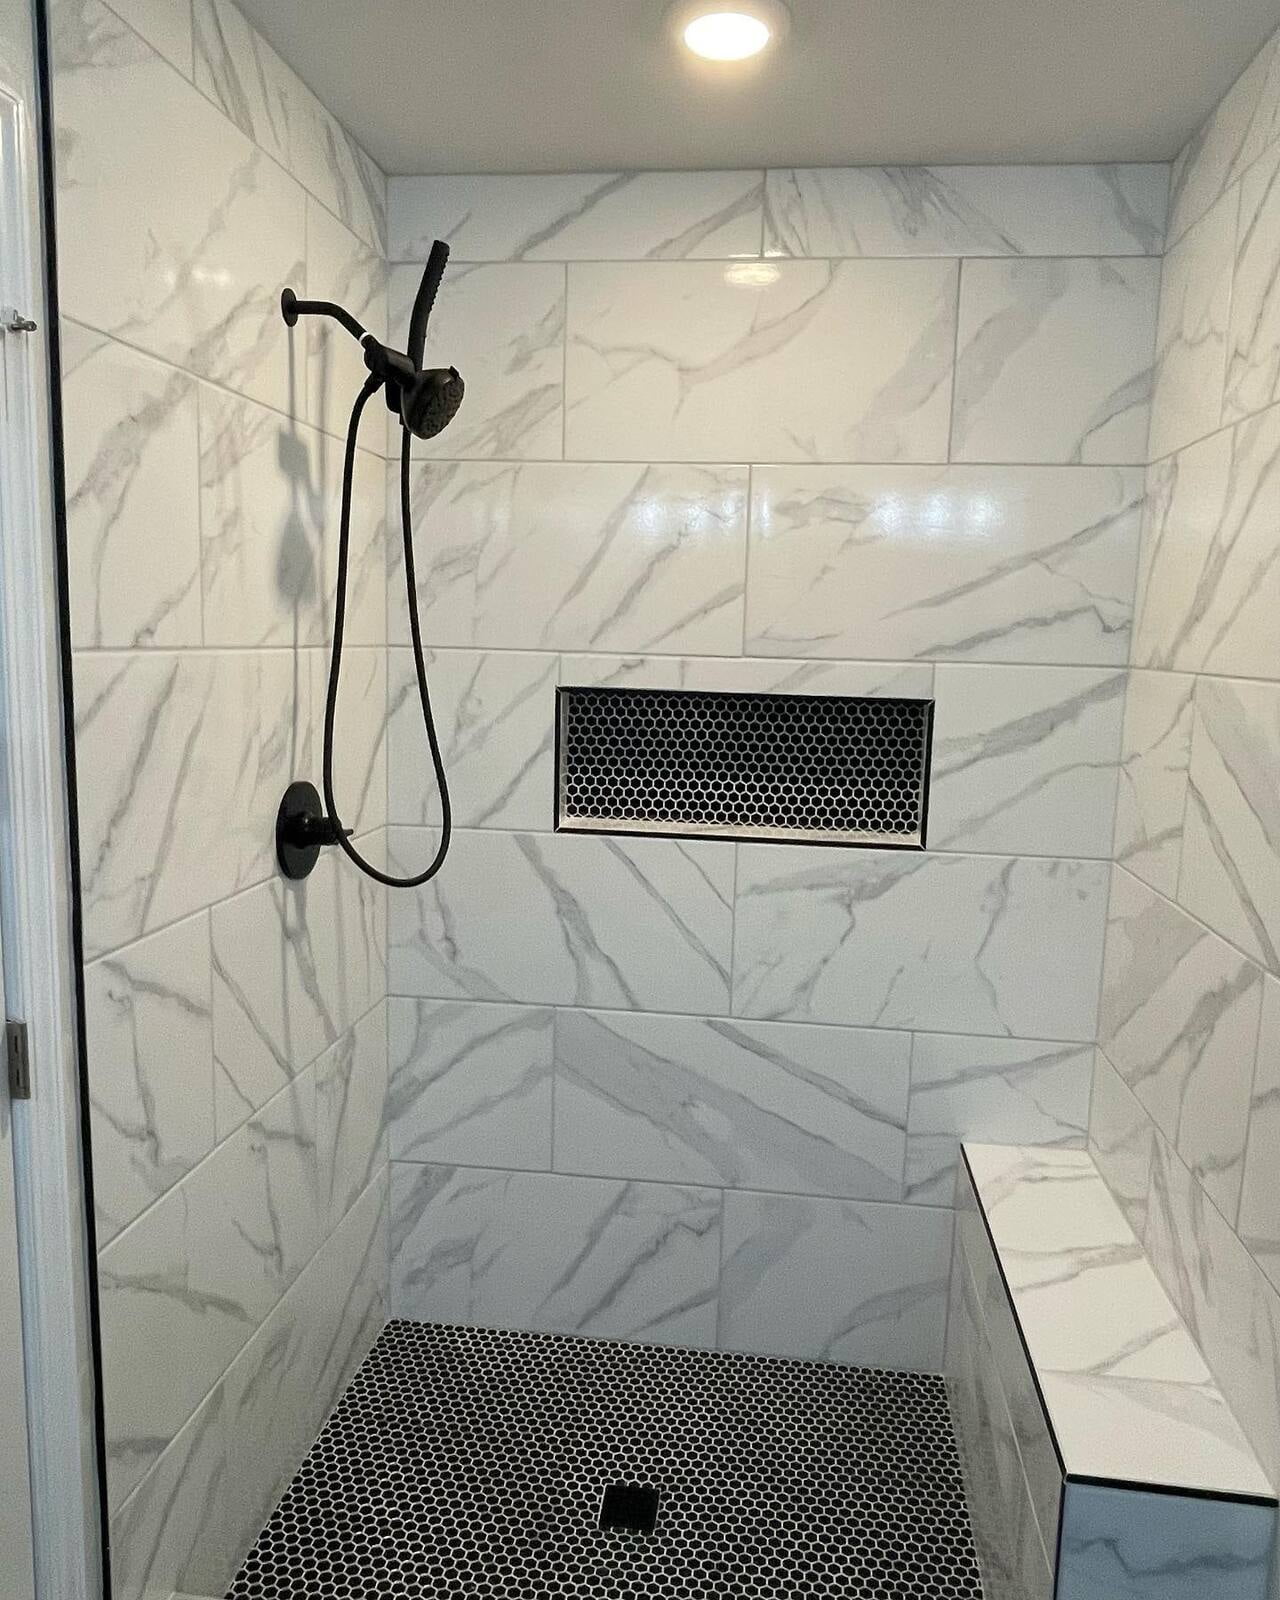 Shower Remodel. Tile, Shower Bench, and Hardware.